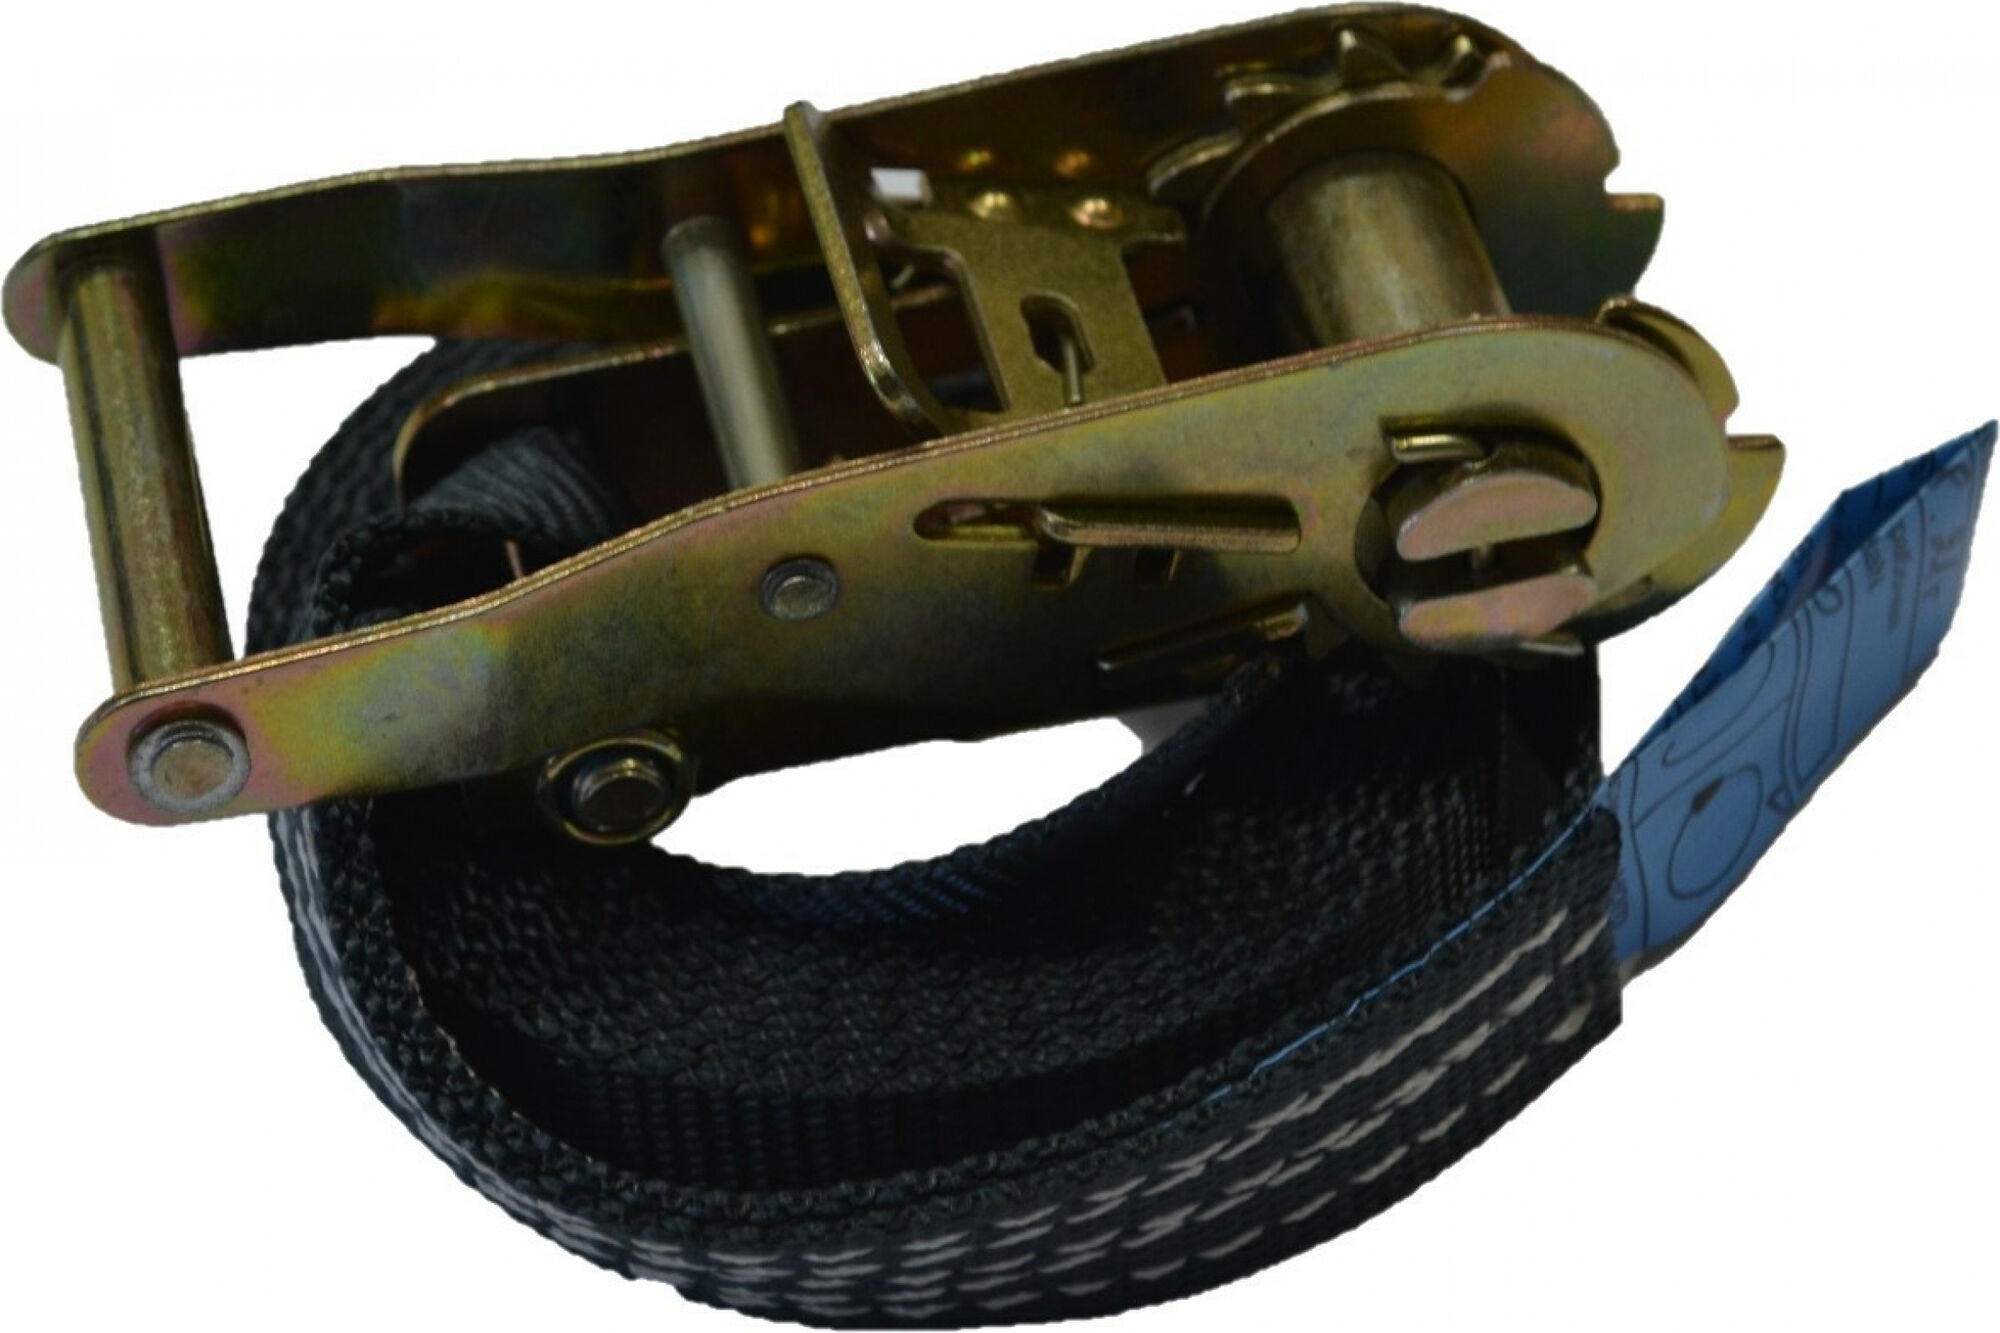 Крепежный стяжной кольцевой ремень Тяни-Толкай 1500 кг РК-25К-5/1500 Тяни-Толкай ТМК